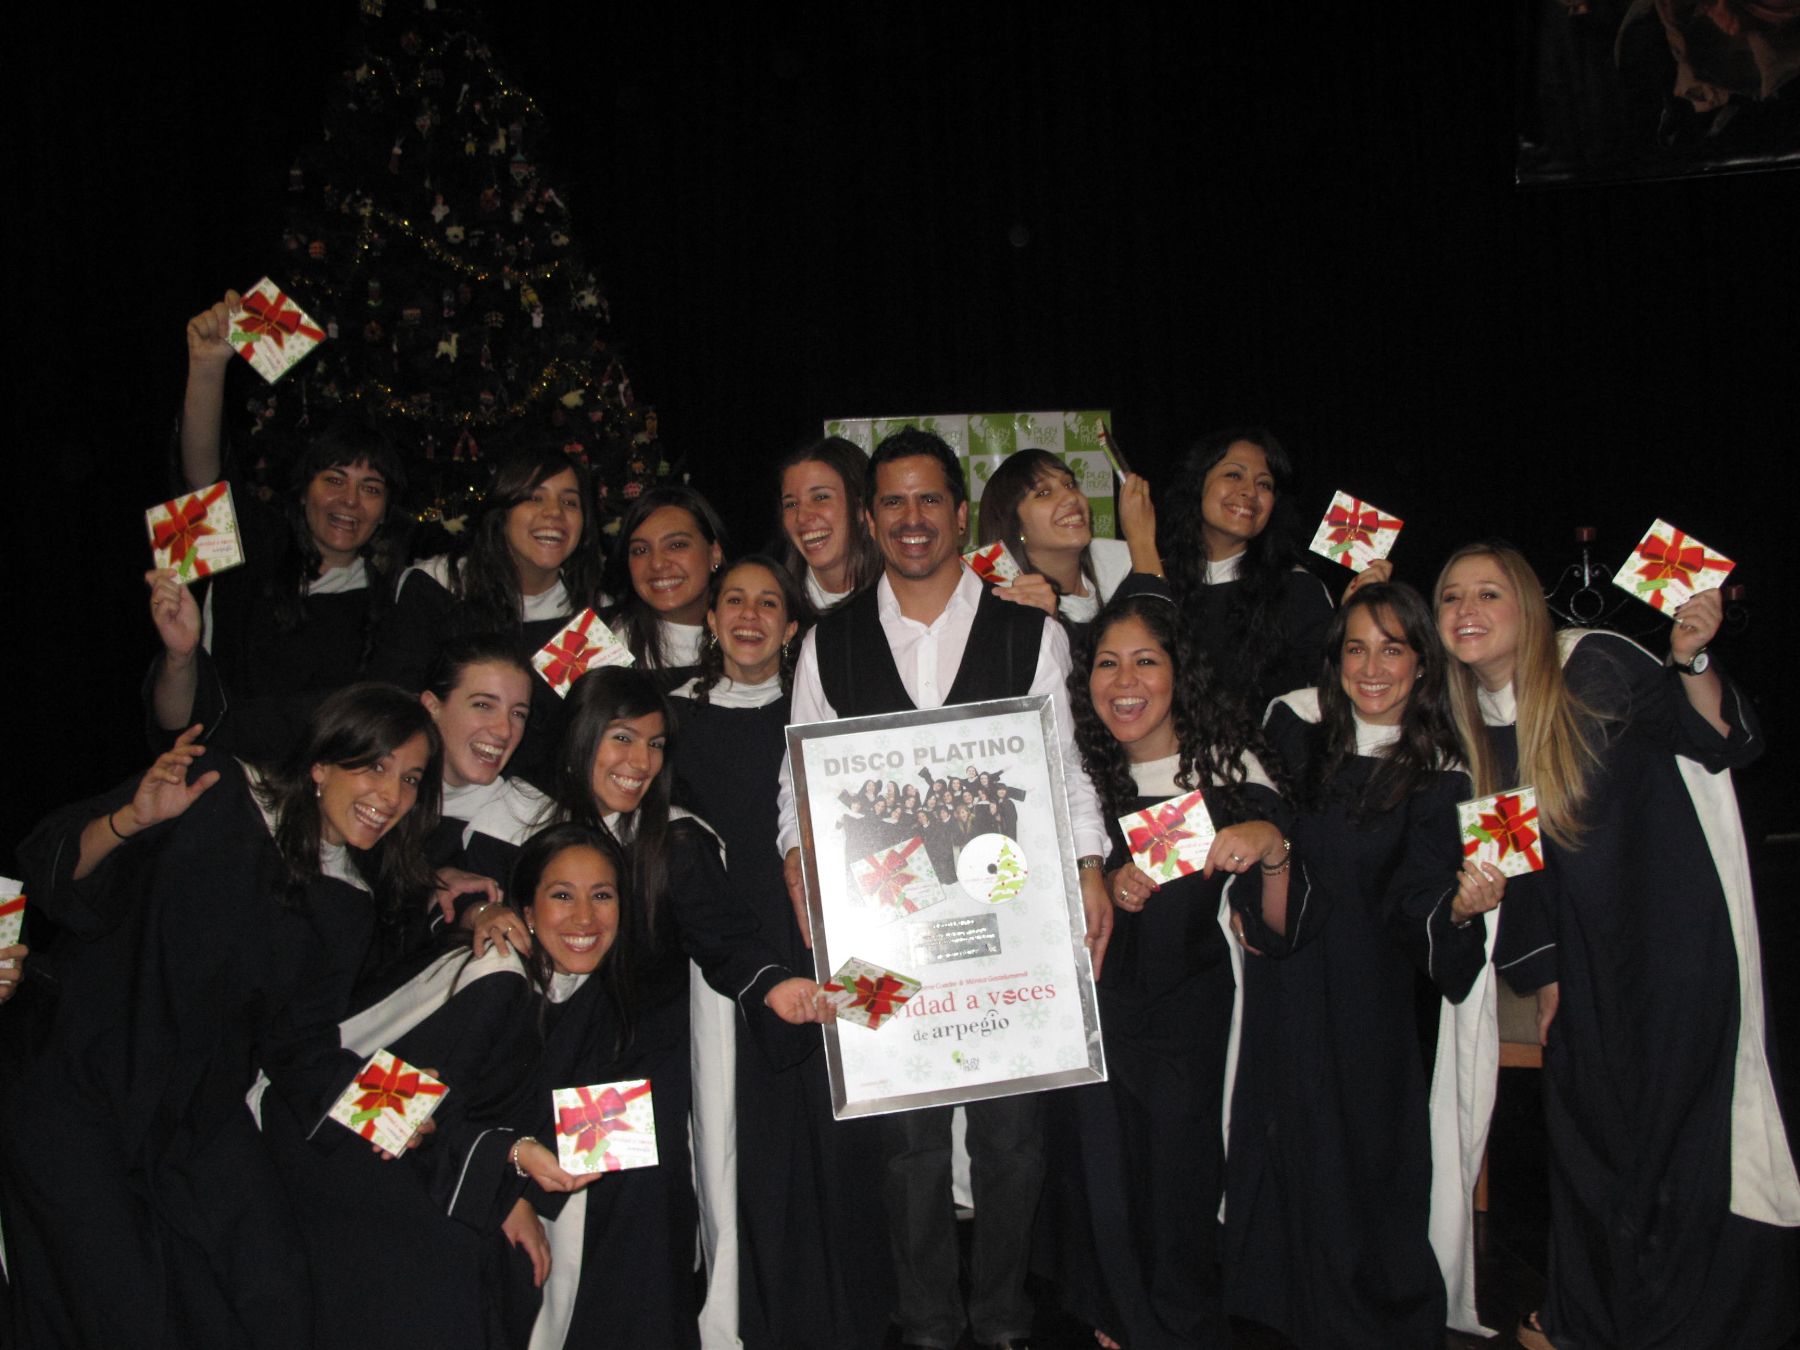 Jaime Cuadra y las integrantes del coro Arpegio reciben el Disco de Platino por la exitosa venta de Navidad a Voces.